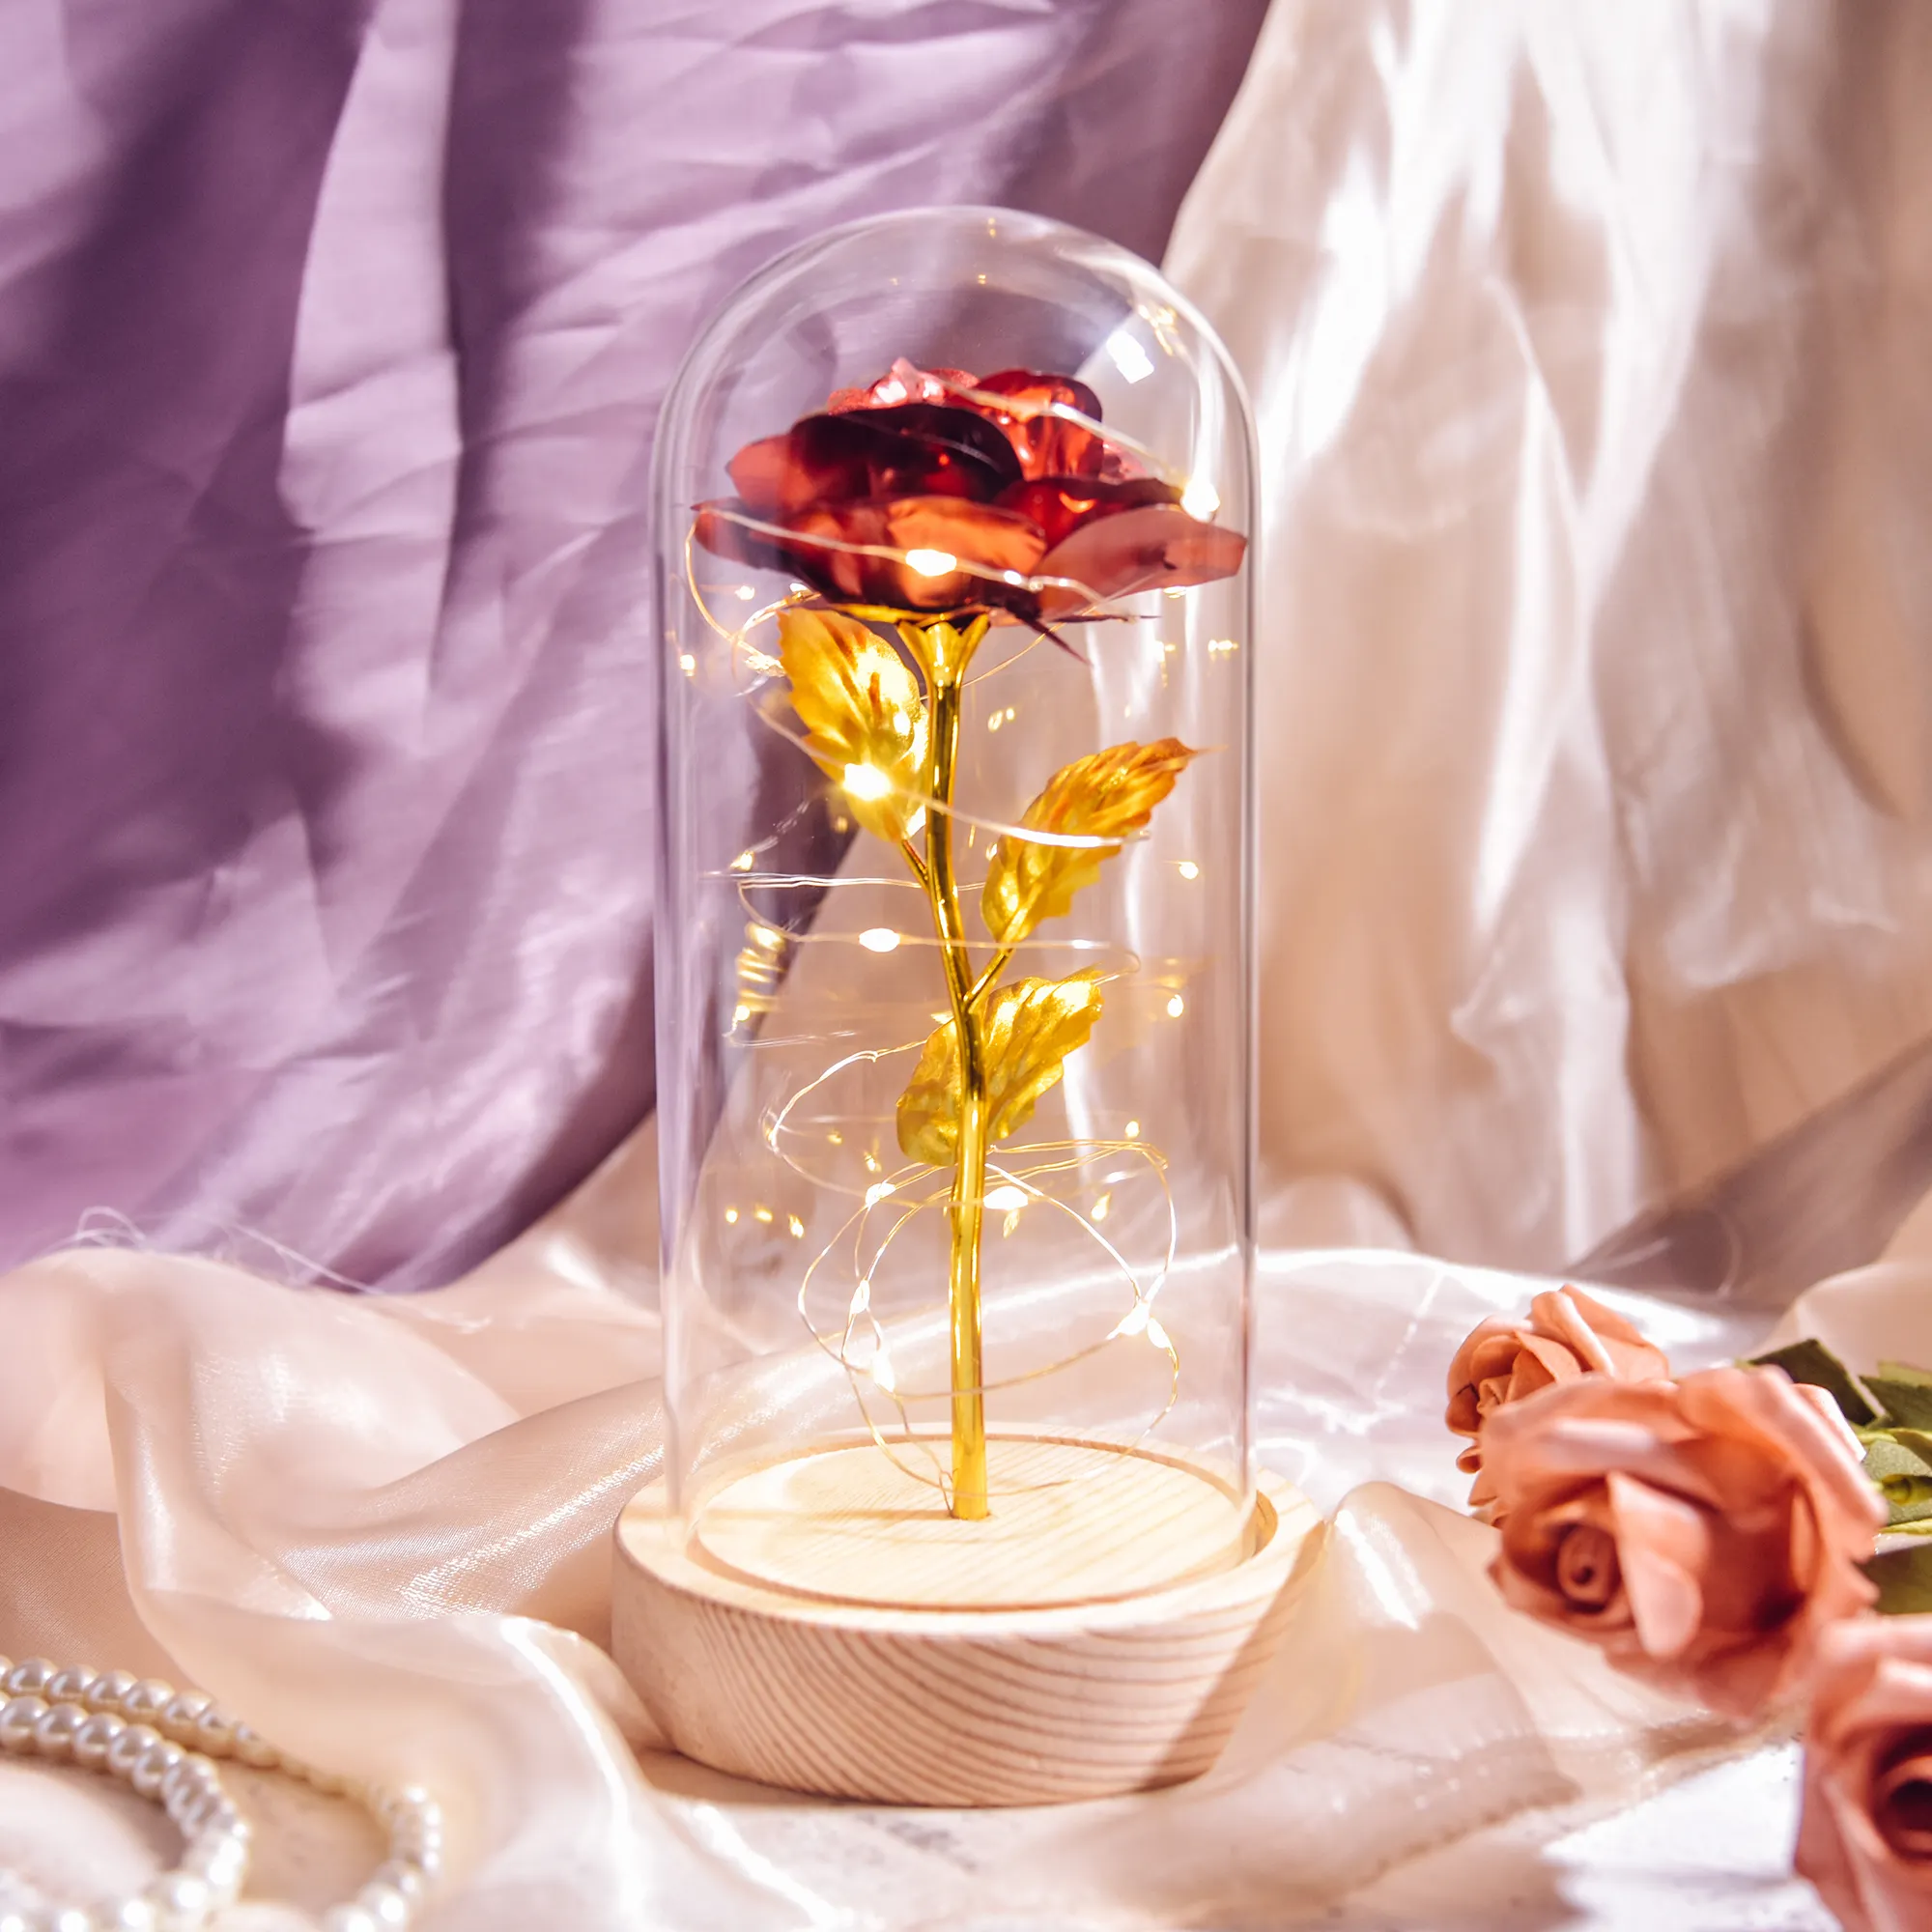 زهور صناعية بارتفاع 22 سم وردة ذهبية عيار 24 في قبة زجاجية مع إضاءة ليد هدايا عيد الأم وعيد الميلاد للنساء والبنات